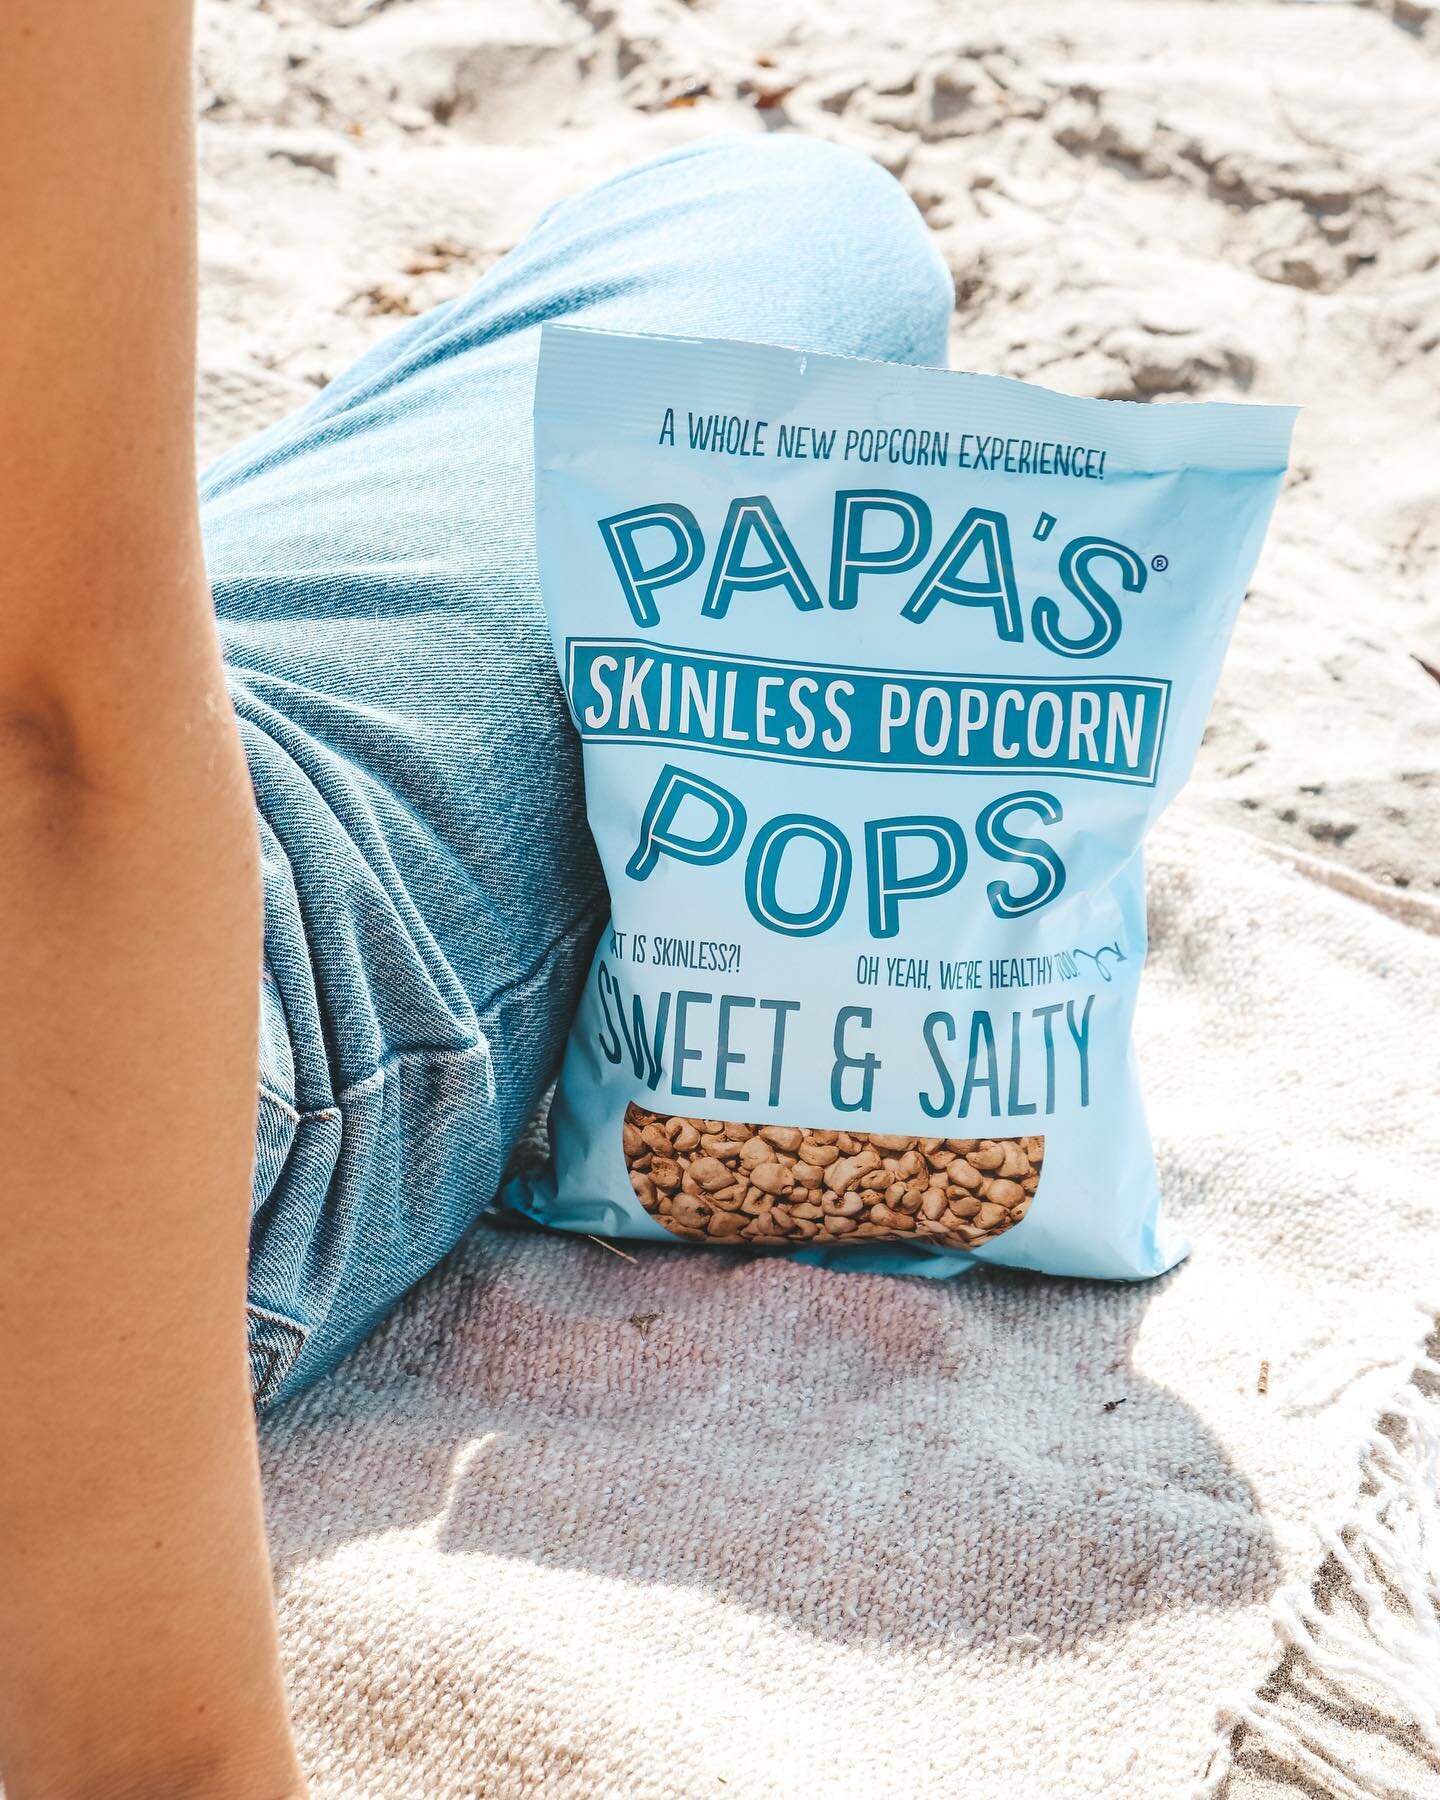 our favorite @papaspops flavor 😋